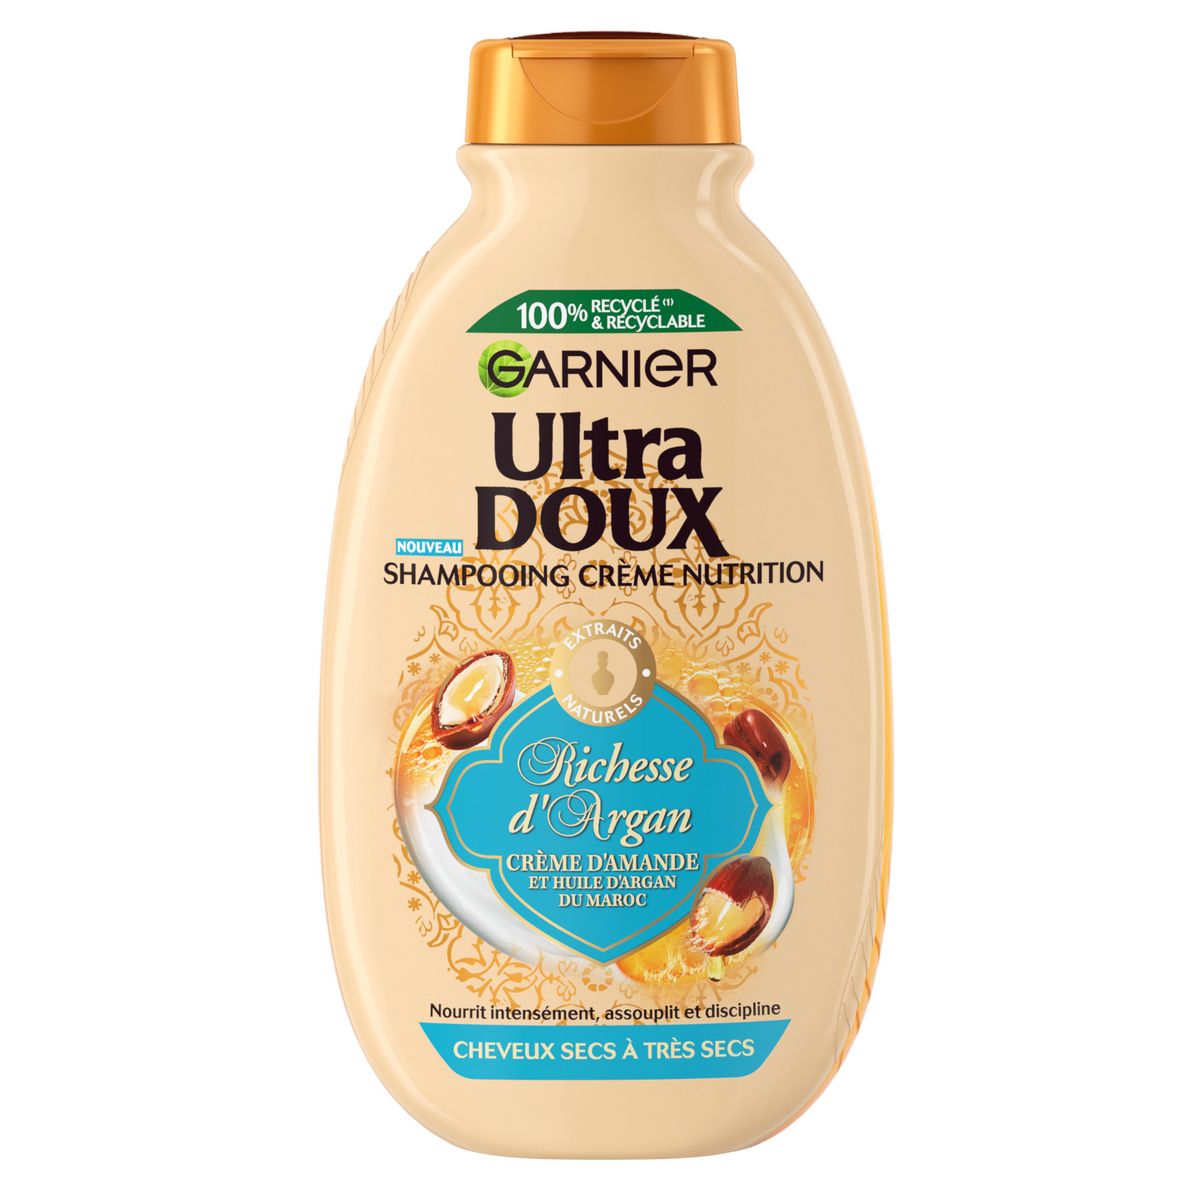 GARNIER ULTRA DOUX Shampooing crème nutrition richesse d'argan cheveux secs à très secs 250ml